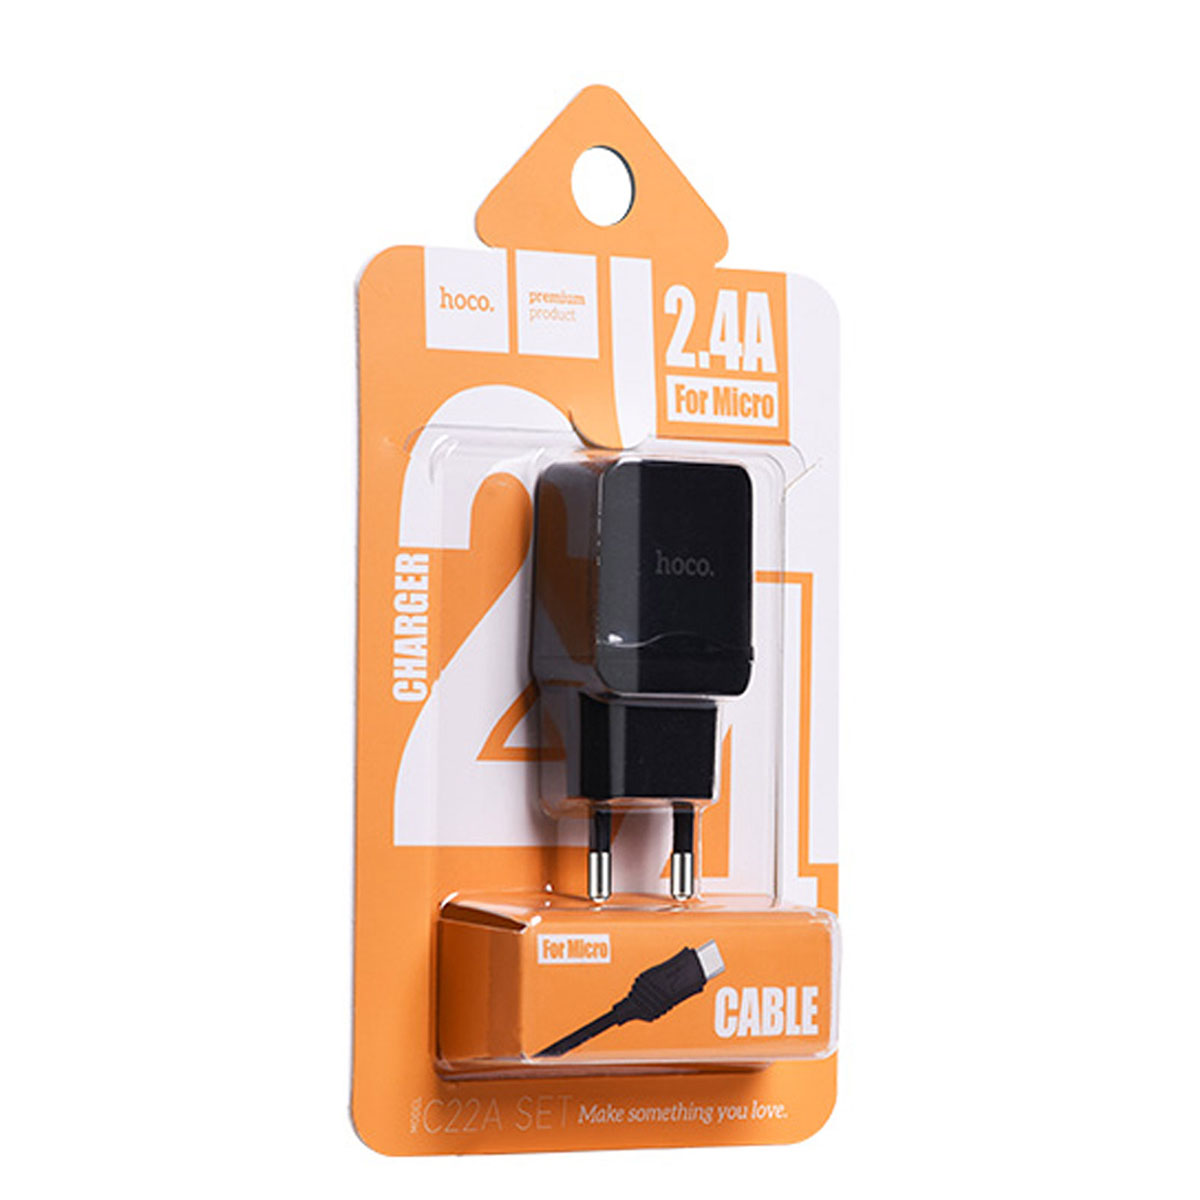 HOCO C22A little superior СЗУ (Сетевое зарядное устройство) 1xUSB 2.4A с кабелем X6 Micro USB длиной 1 метр, цвет черный.